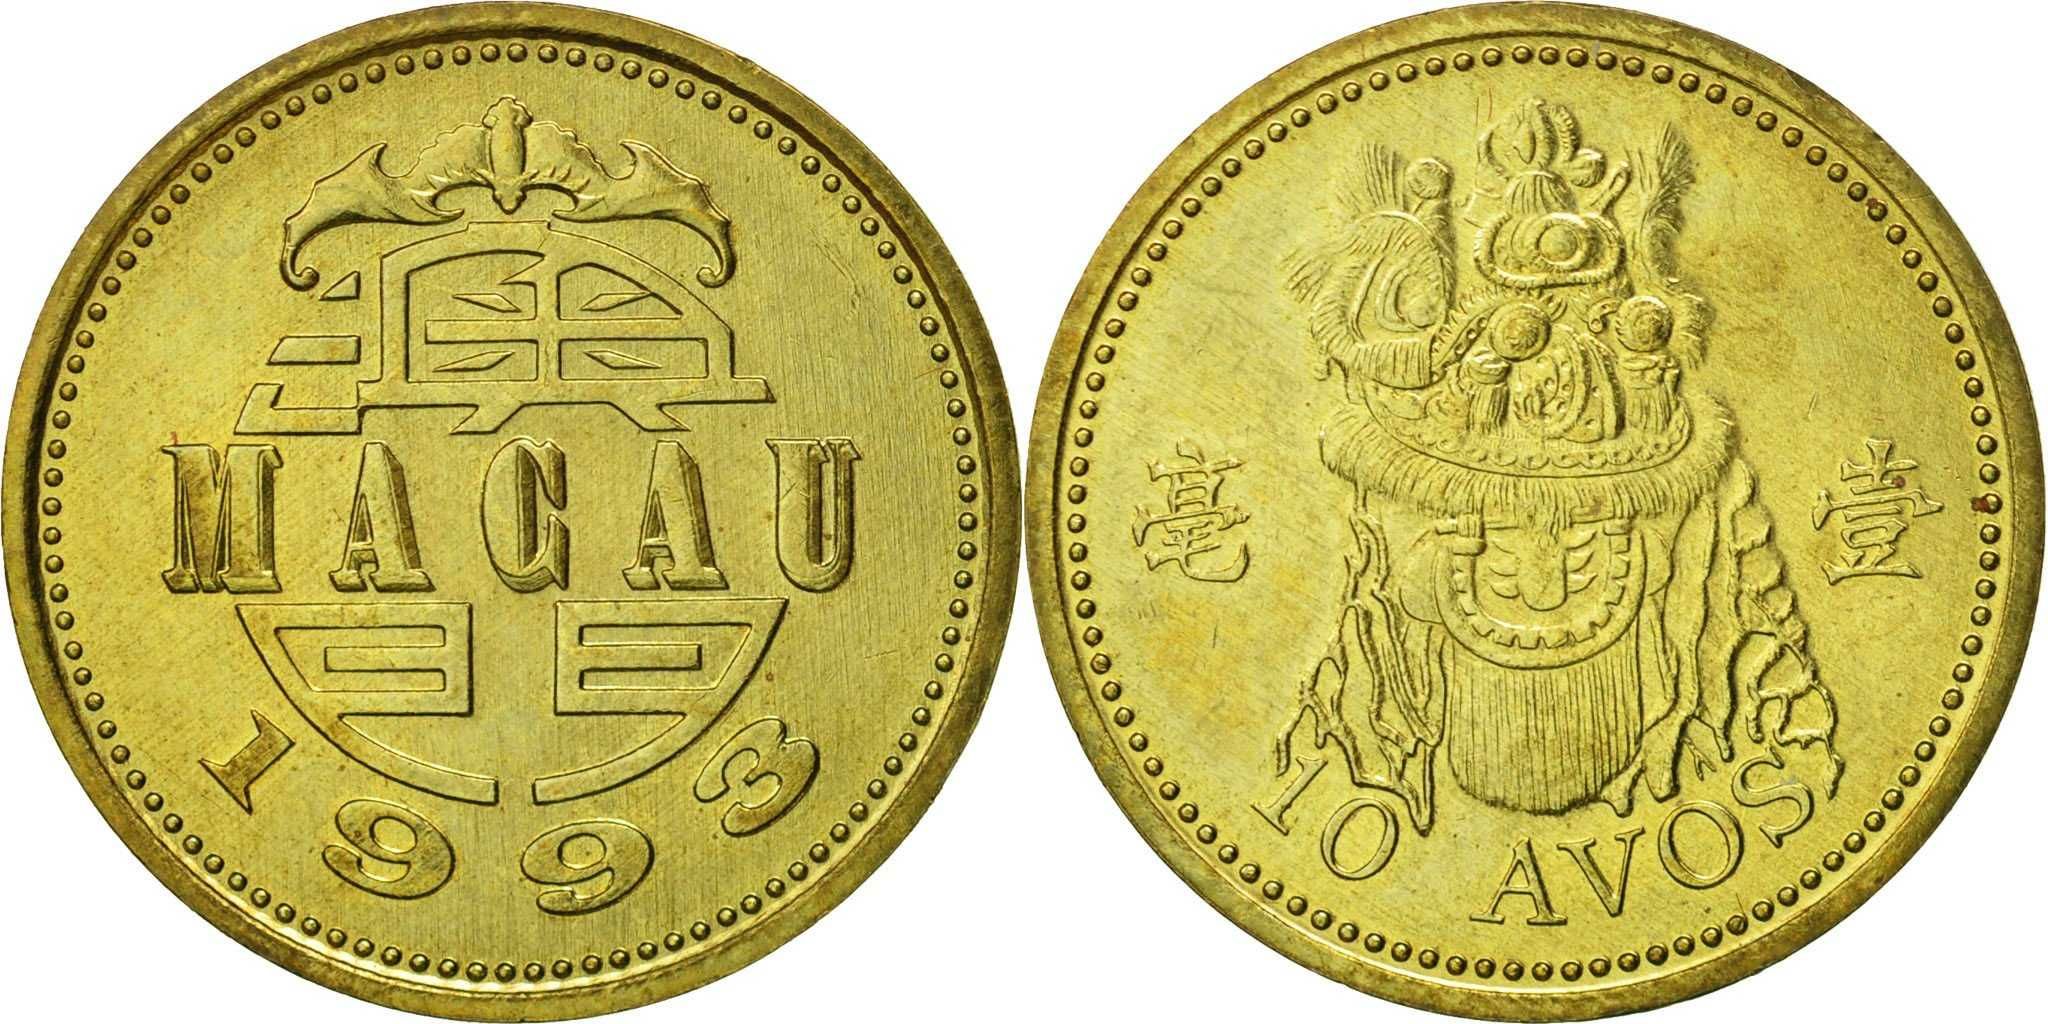 16 moedas de 10 avos de Macau de 1993